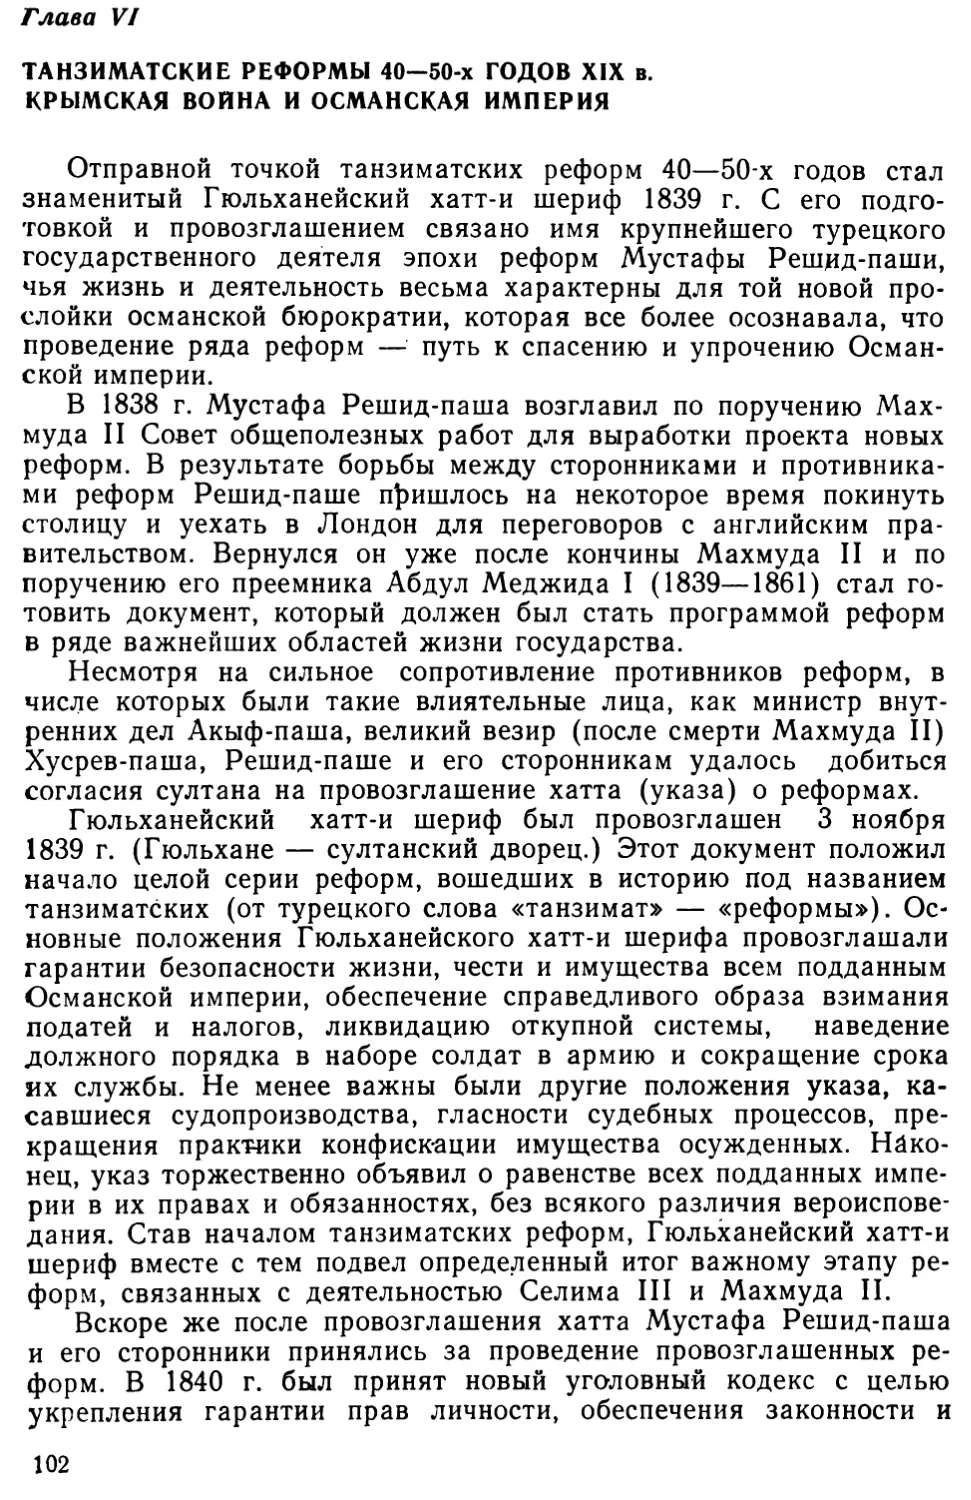 Глава VI. Танзиматские реформы 40—50-х годов XIX в. Крымская война и Османская империя